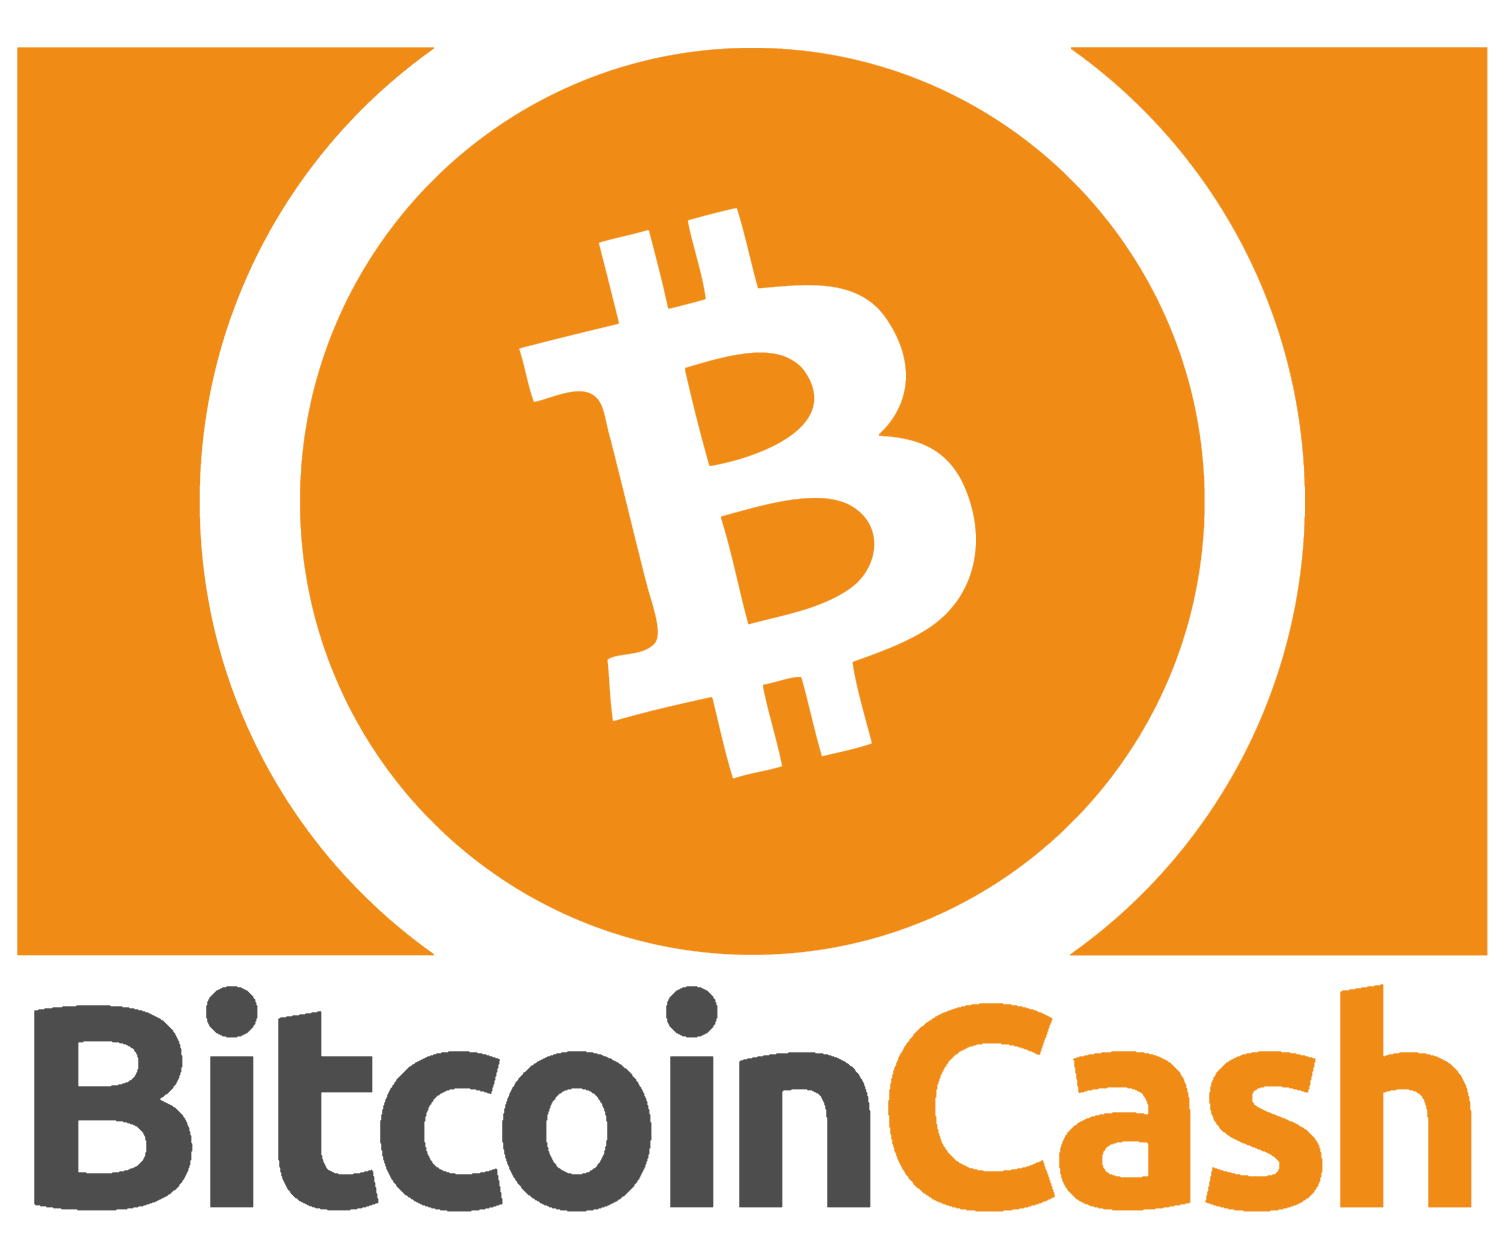 0.00030414 bitcoin cash